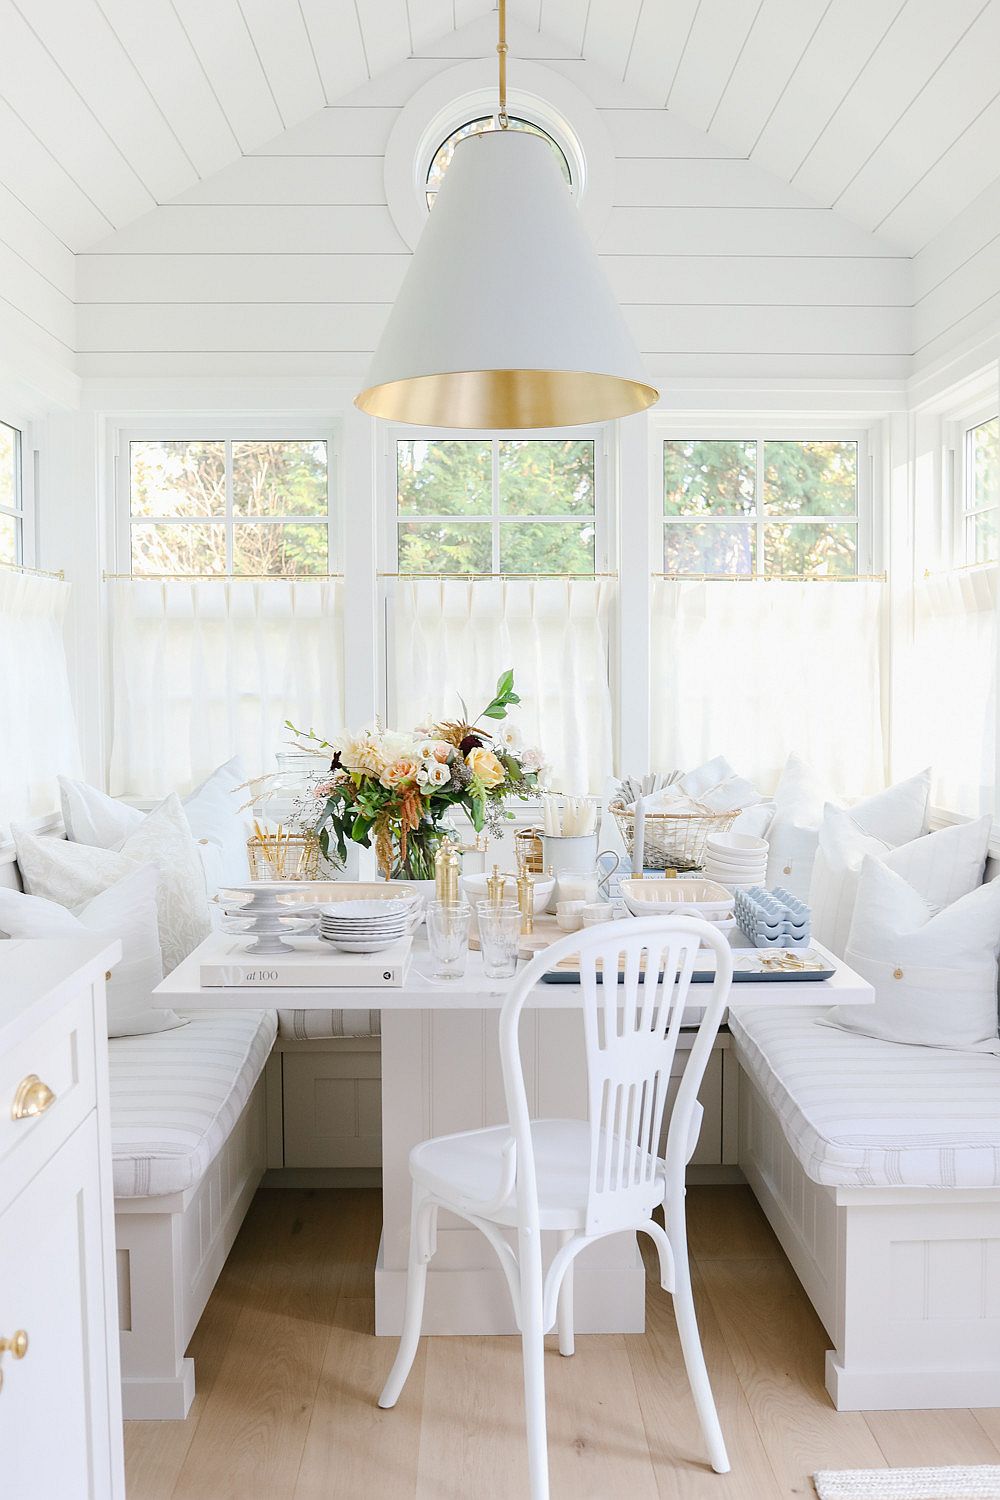 Chỗ ngồi kiểu "banquette" được đánh giá là giải pháp phù hợp cho không gian ăn uống có diện tích khiêm tốn.